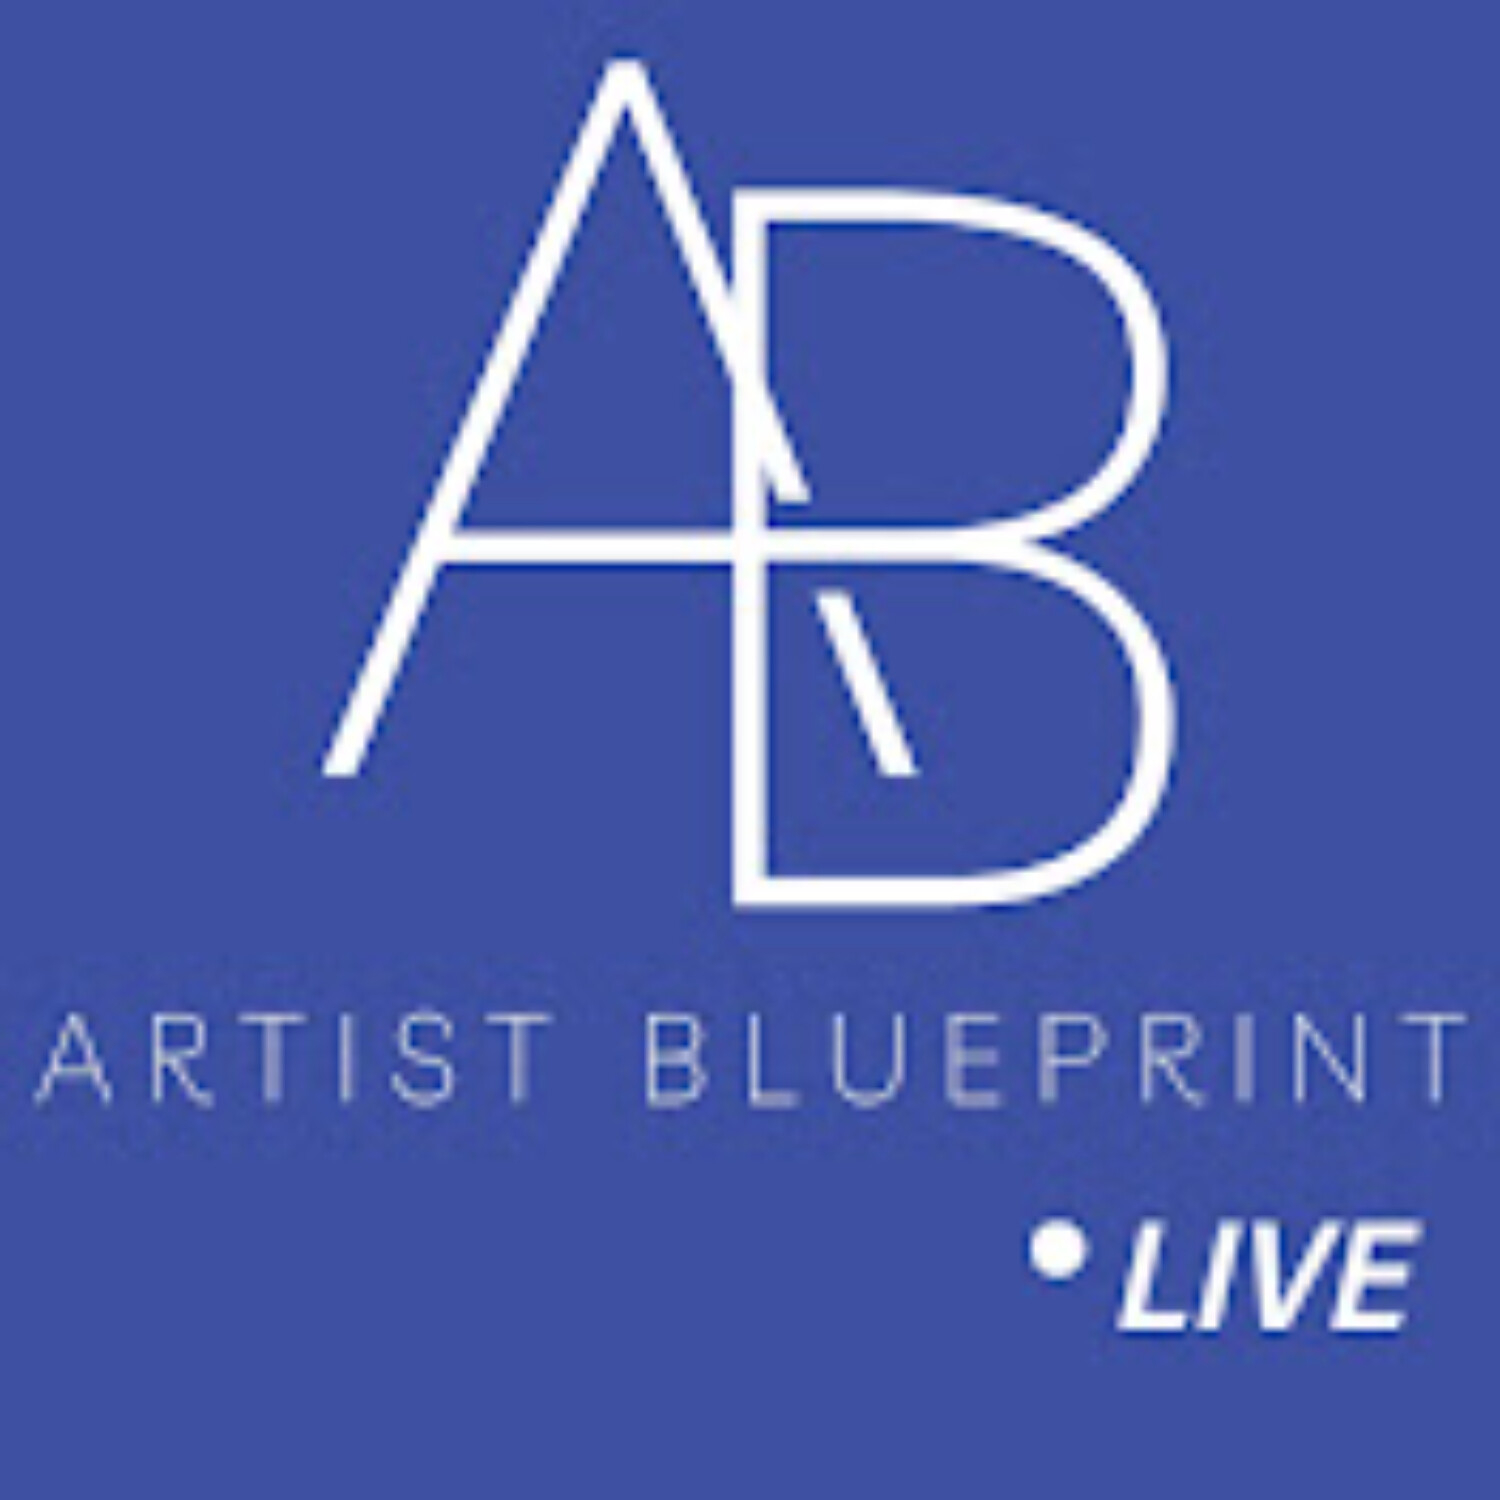 Artist Blueprint - An Introduction